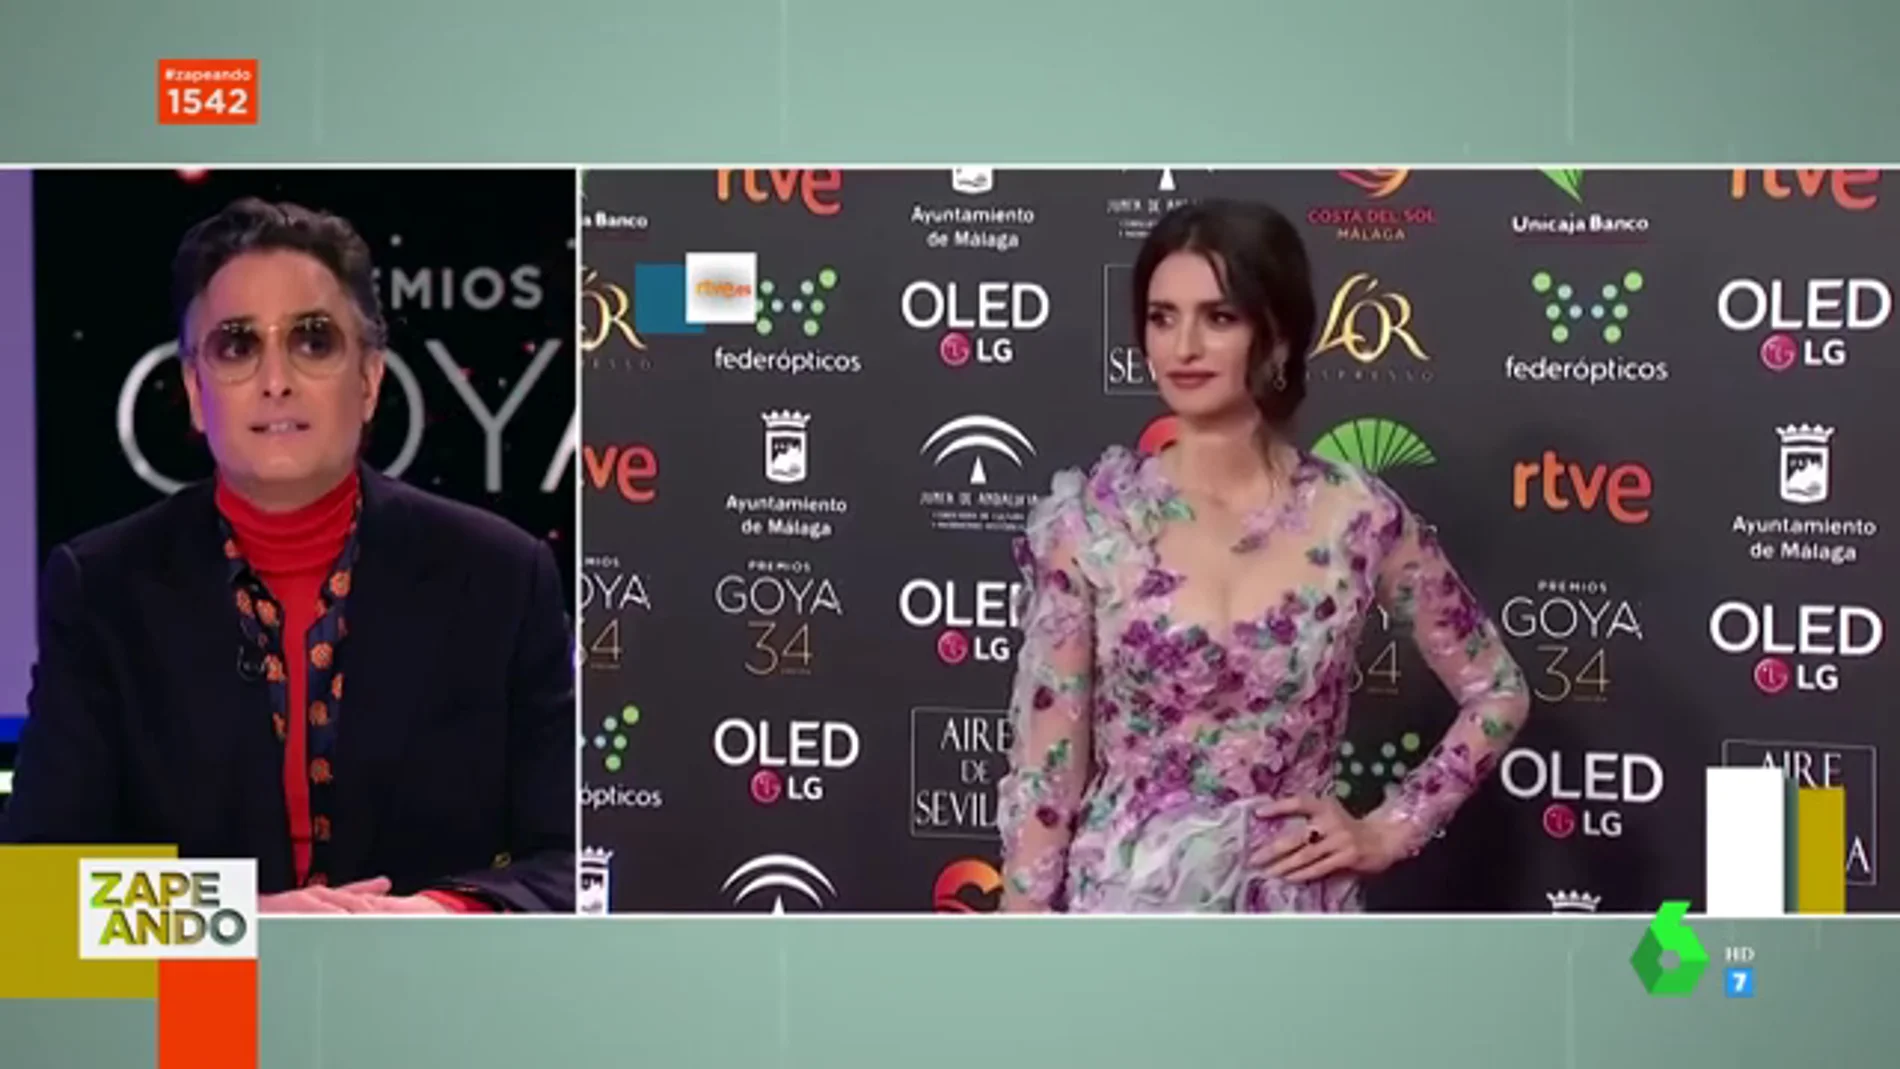 La decepción de Josie con el look de su amada Penélope Cruz en los Goya: "Transmite que no lo está pasando bien con la moda"